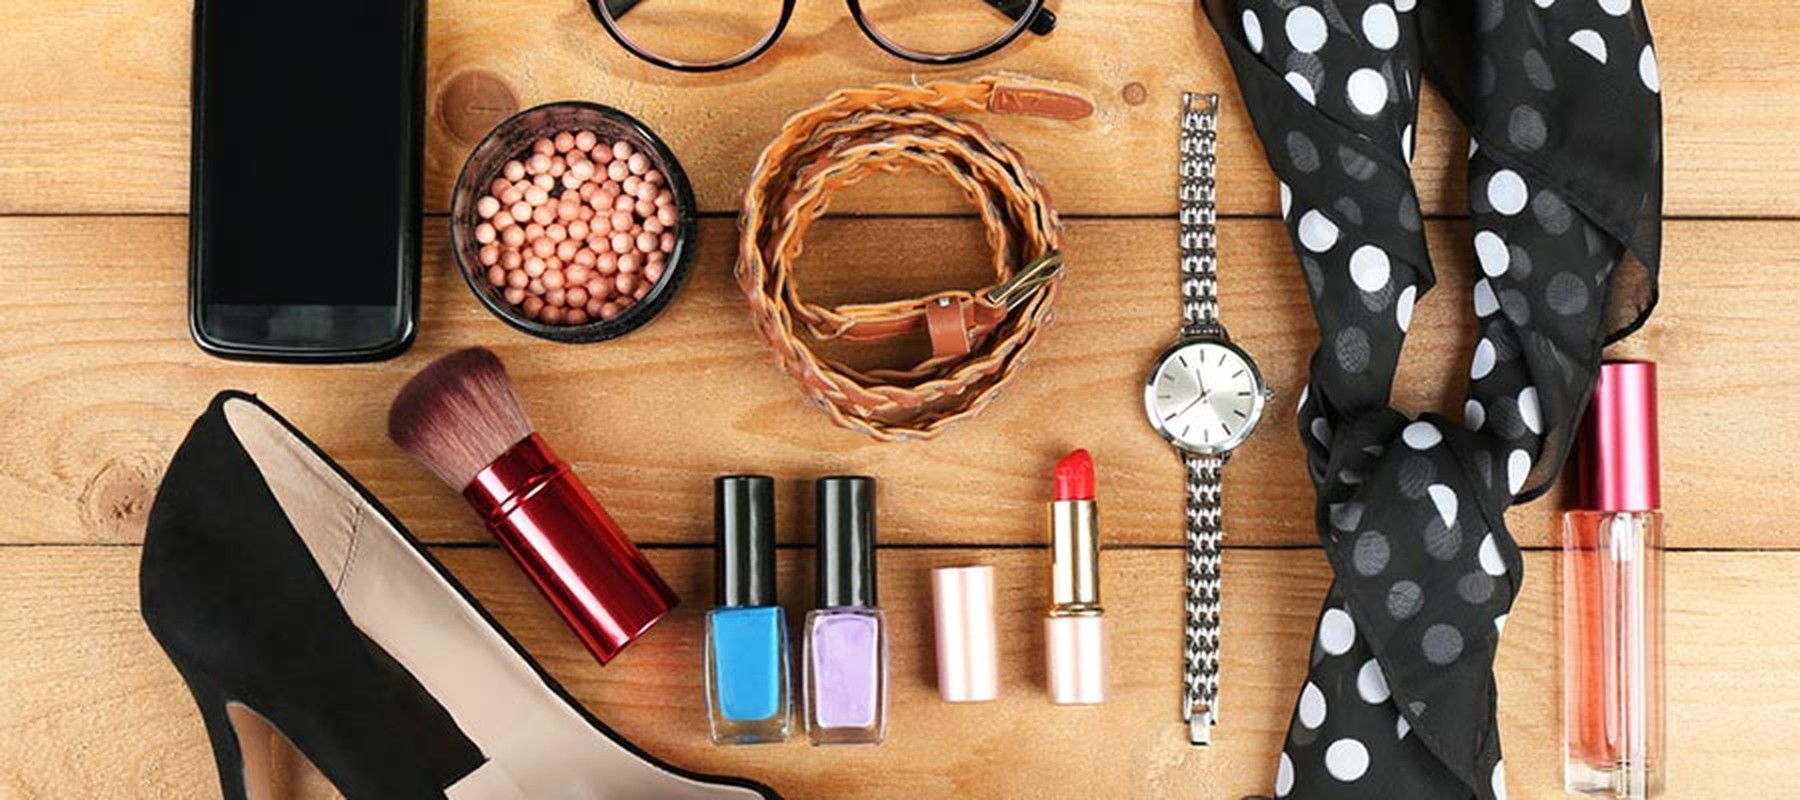 Accesorios de moda y maquillaje: un reloj, pañuelo, maquillaje, etc.